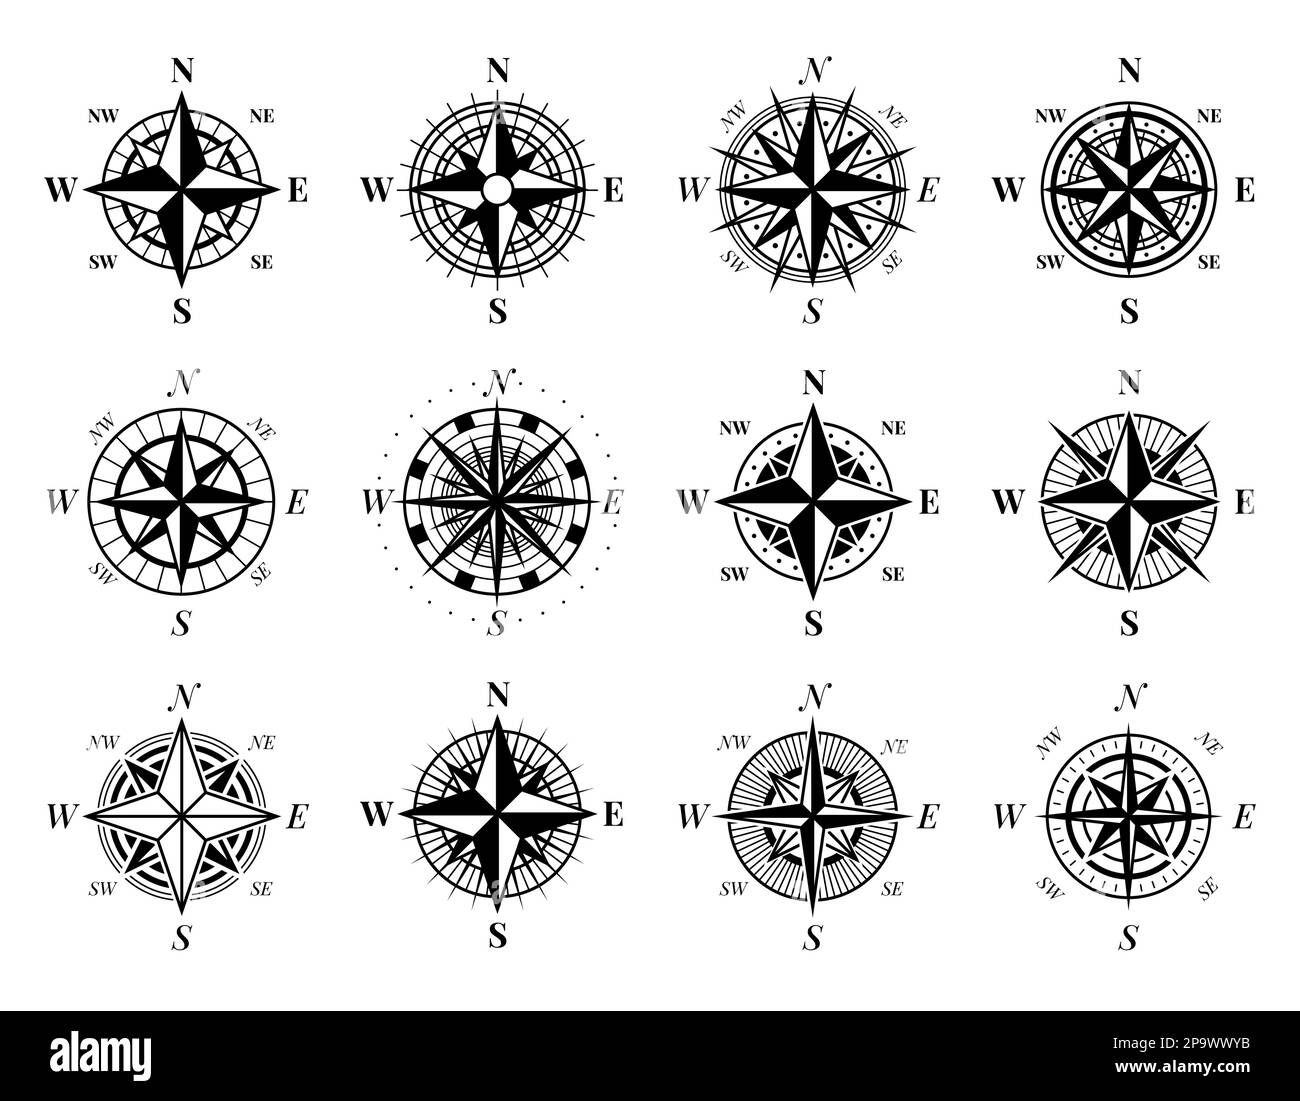 Alte Kompasssymbole. Klassische nautische Windrosen und Navigationsinstrumente. Kartographie-Retro-Symbol. Nördliche Kartenausrichtung. Schwarze Silhouetten-Topographiegeräte. Piktogramme für Vektor-Fahrtrichtung eingestellt Stock Vektor